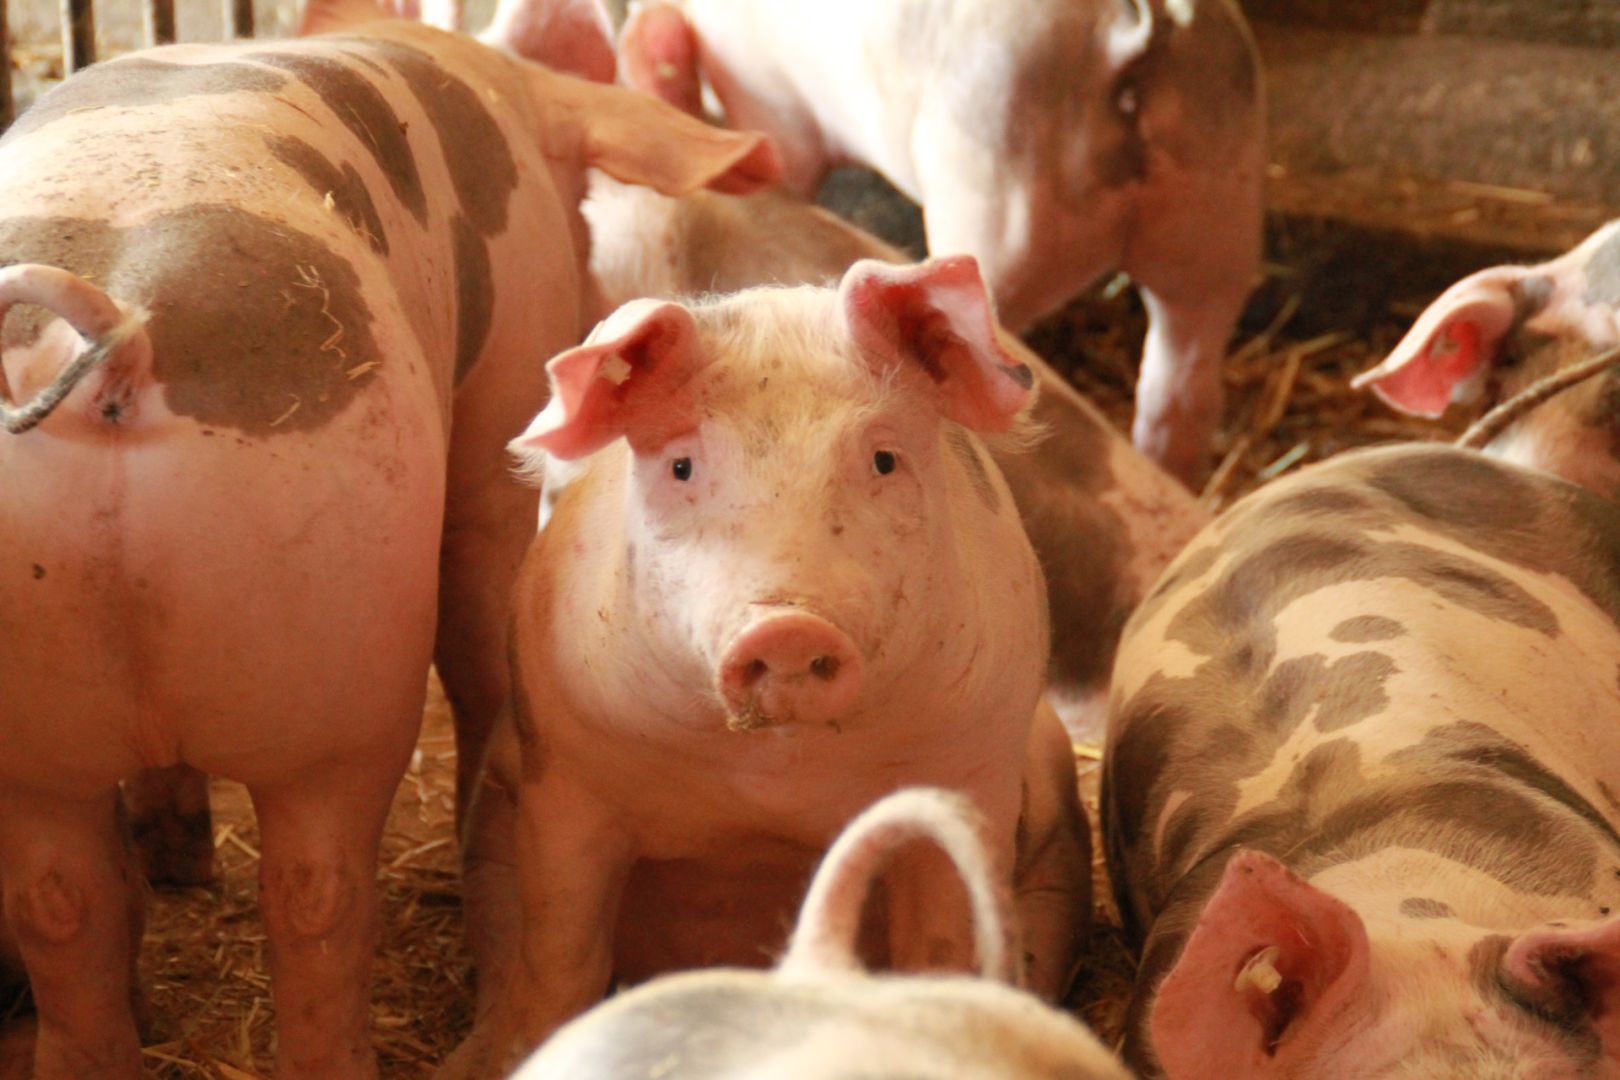 Informacja dla rolników utrzymujących świnie w sprawie PLANU BEZPIECZEŃSTWA BIOLOGICZNEGO